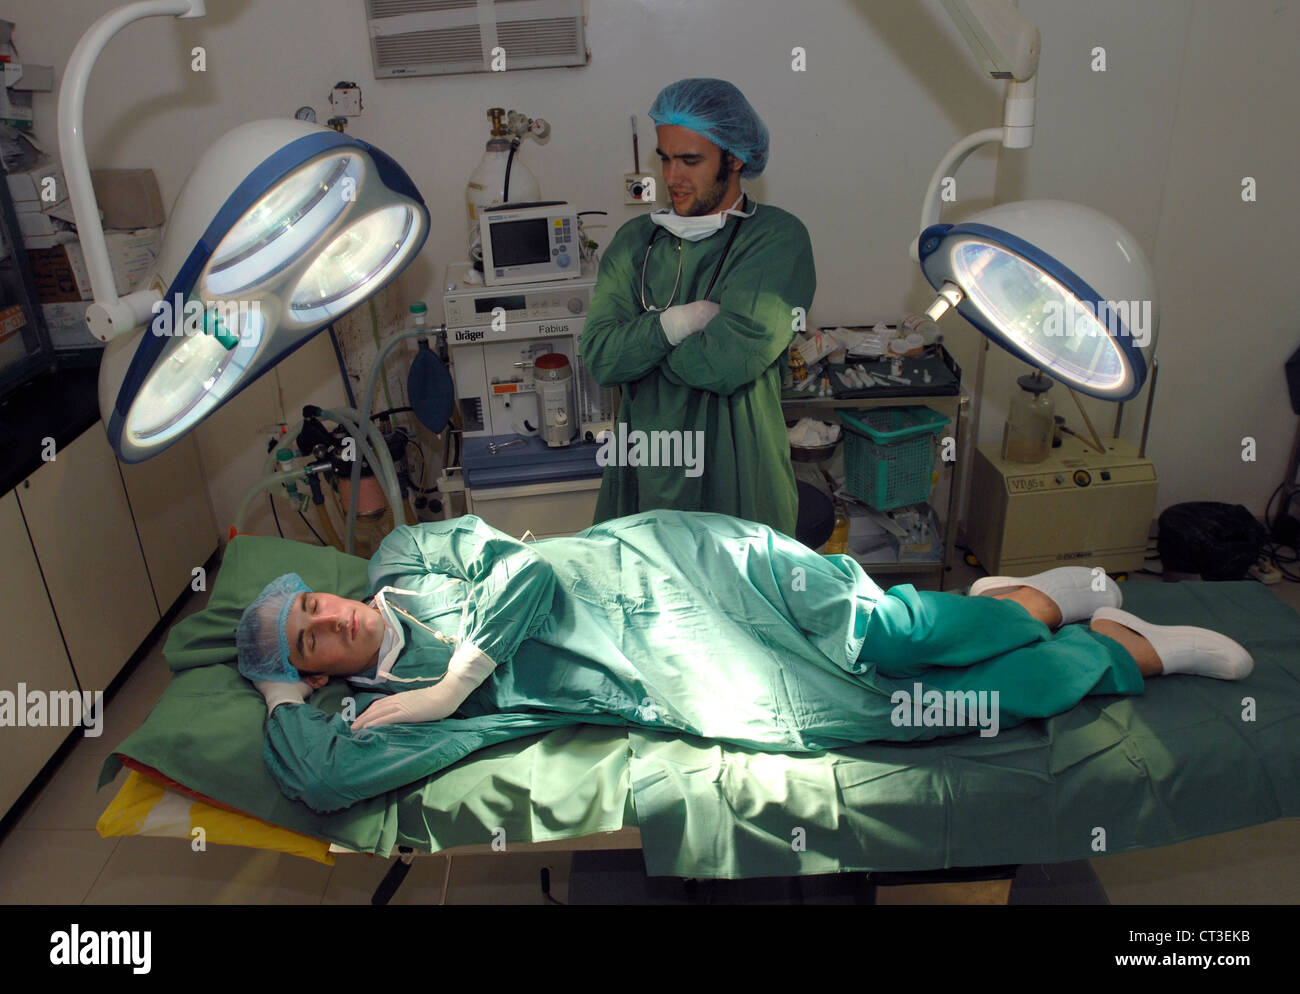 Un estudiante impresionan médico observa como su colleage duerme en una mesa de operaciones. Foto de stock